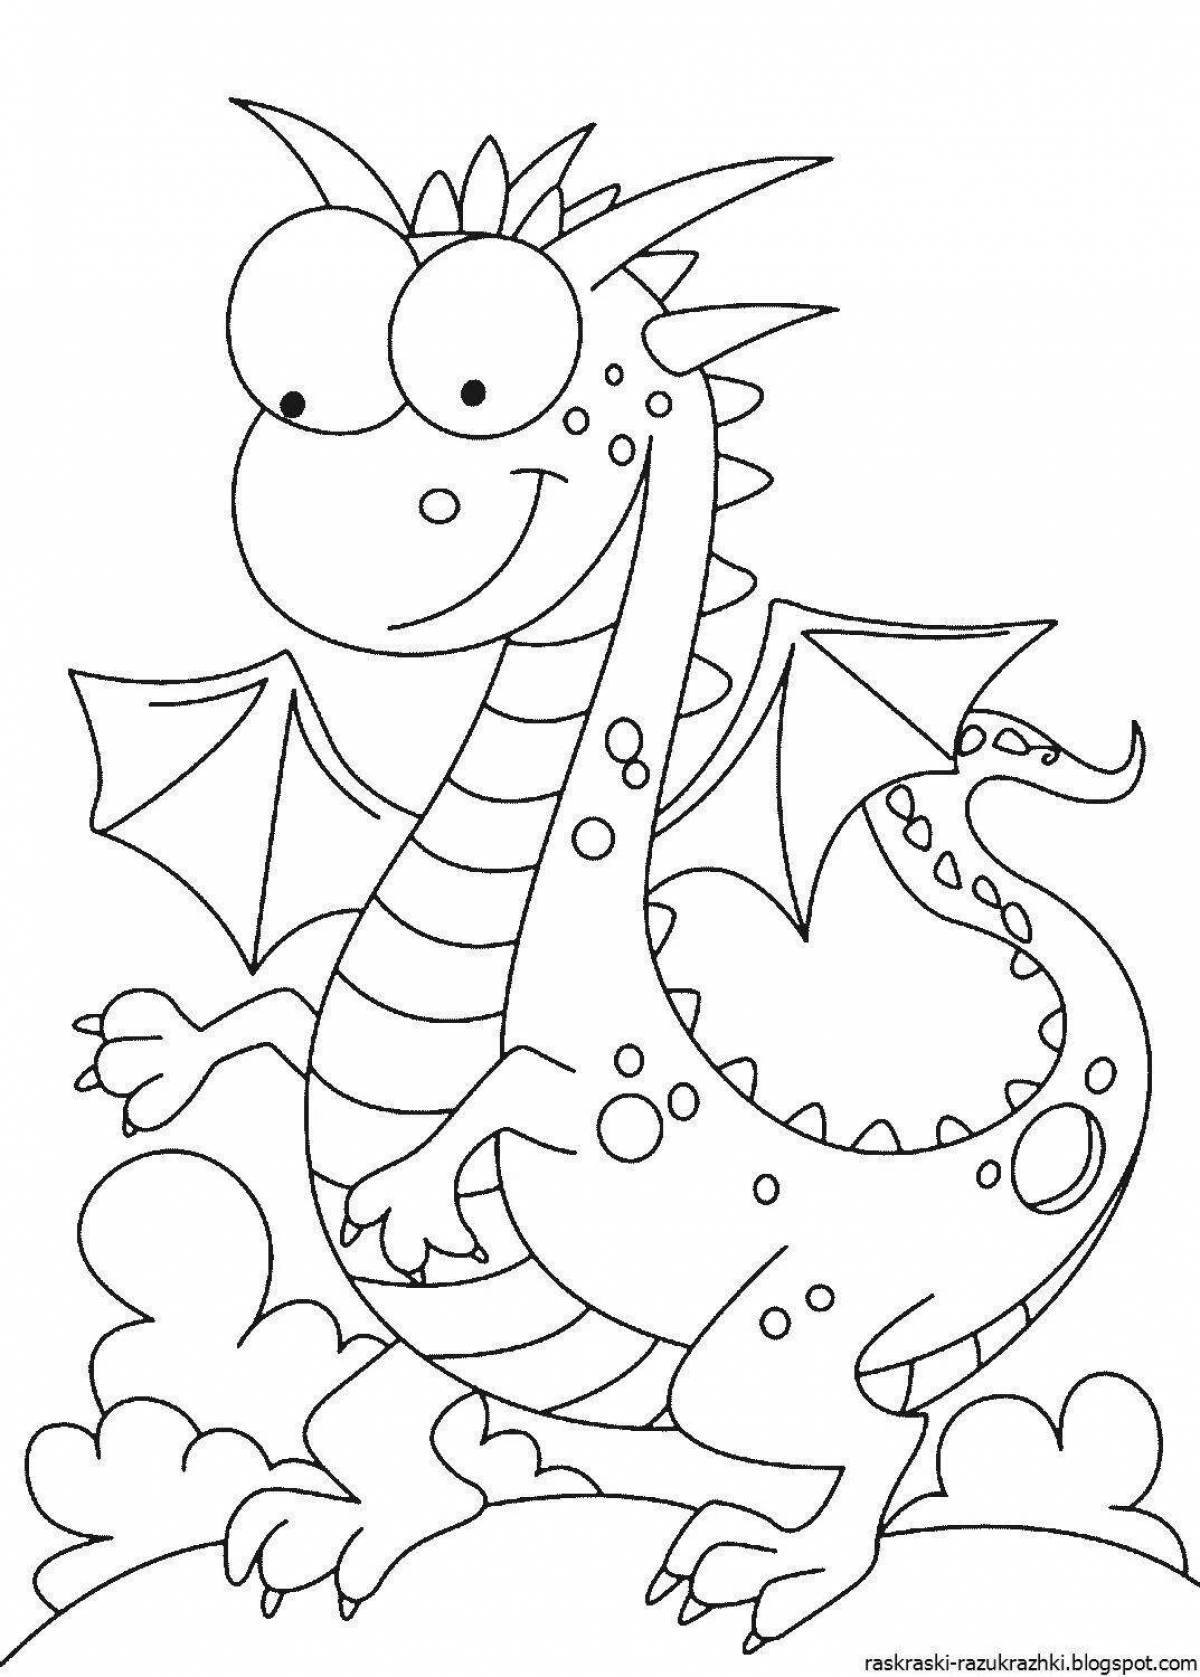 Дракон рисунок для детей новый год. Раскраска дракон. Дракон раскраска для детей. ДРАКОНS раскраска для детей. Дракончик раскраска для детей.